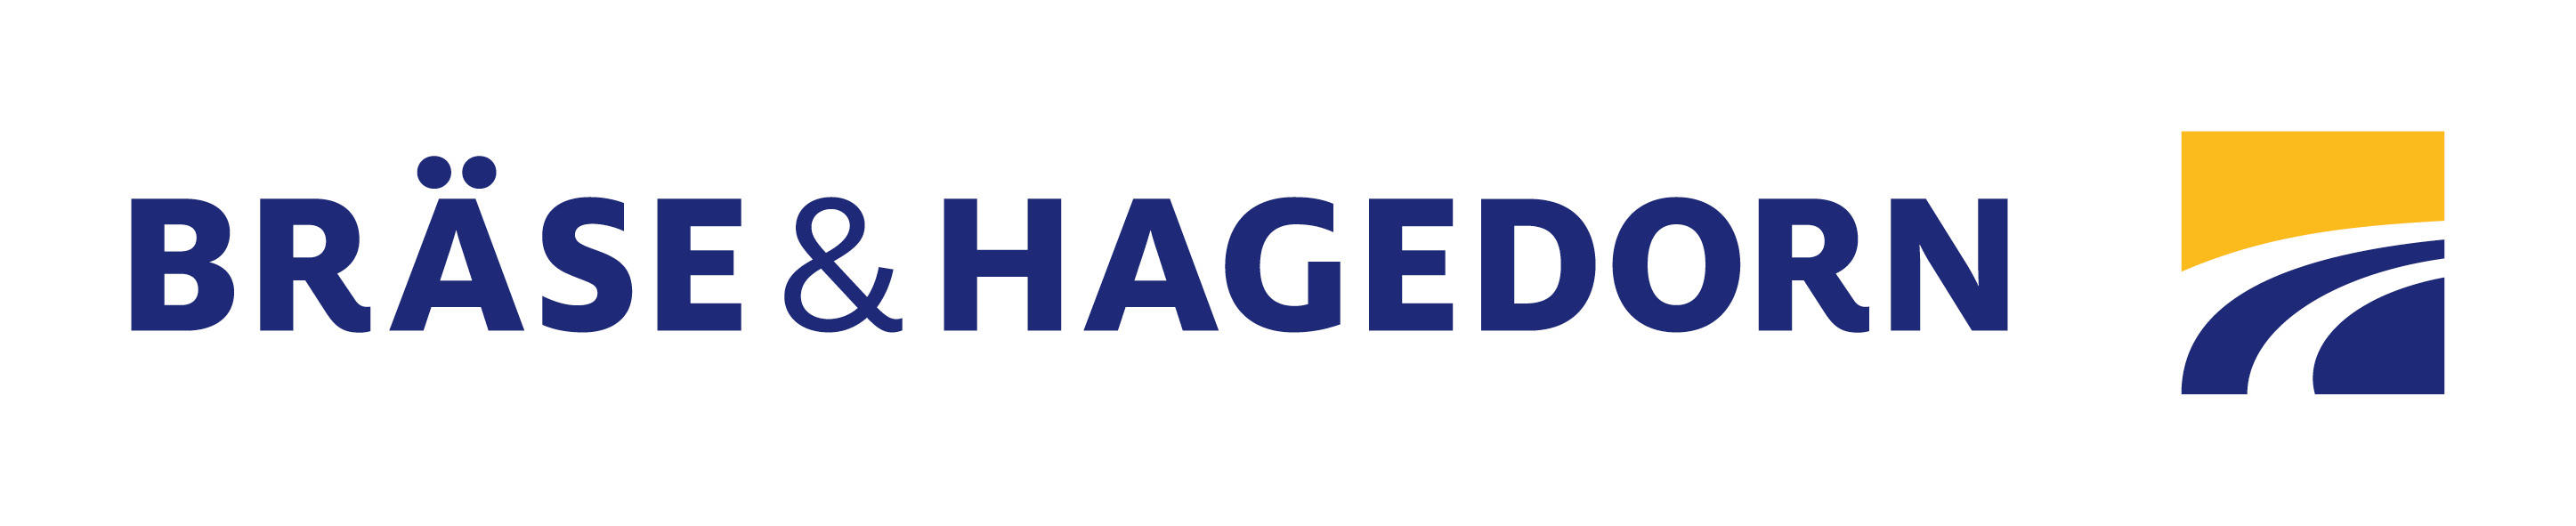 Kundenbild groß 1 Bräse & Hagedorn GmbH